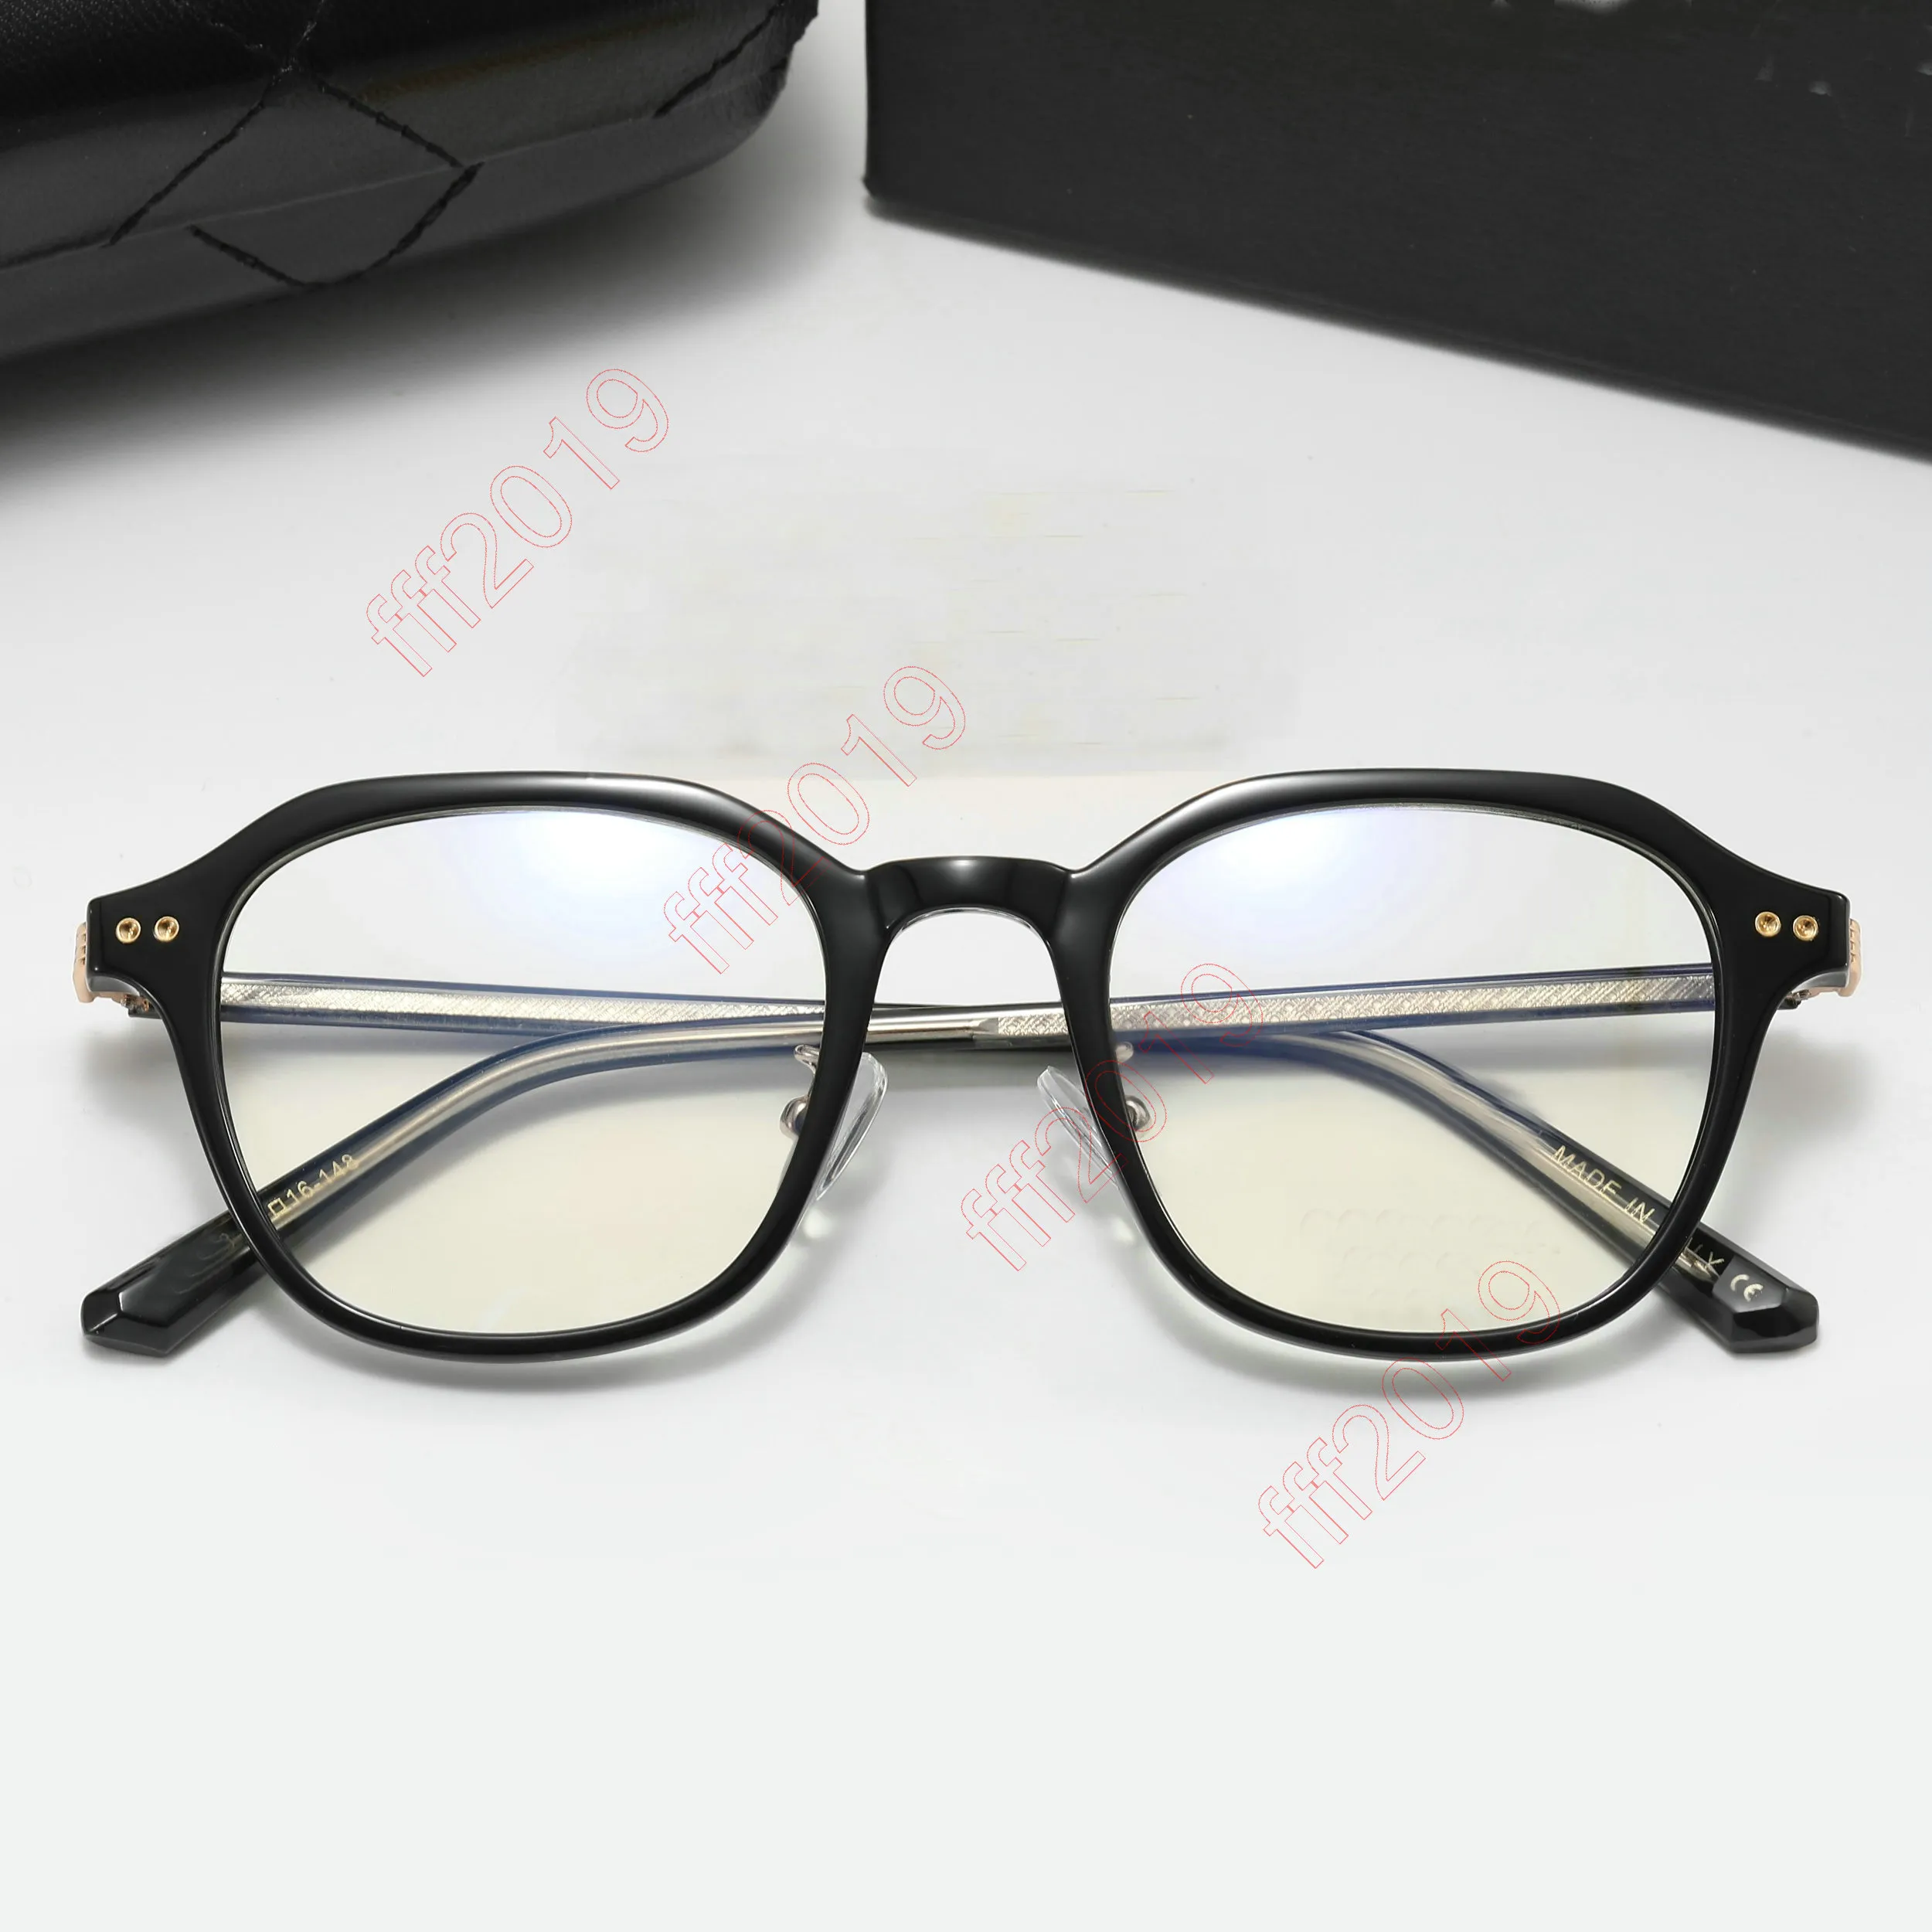 2022 Moda Marka Güneş Gözlüğü Yuvarlak Optik Gözlükler Kadın Erkekler Temizle Anti Mavi Işık Engelleme Gözlükleri Çerçeve Reçeteli Şeffaf Gösteri Çerçeveleri Unisex 88